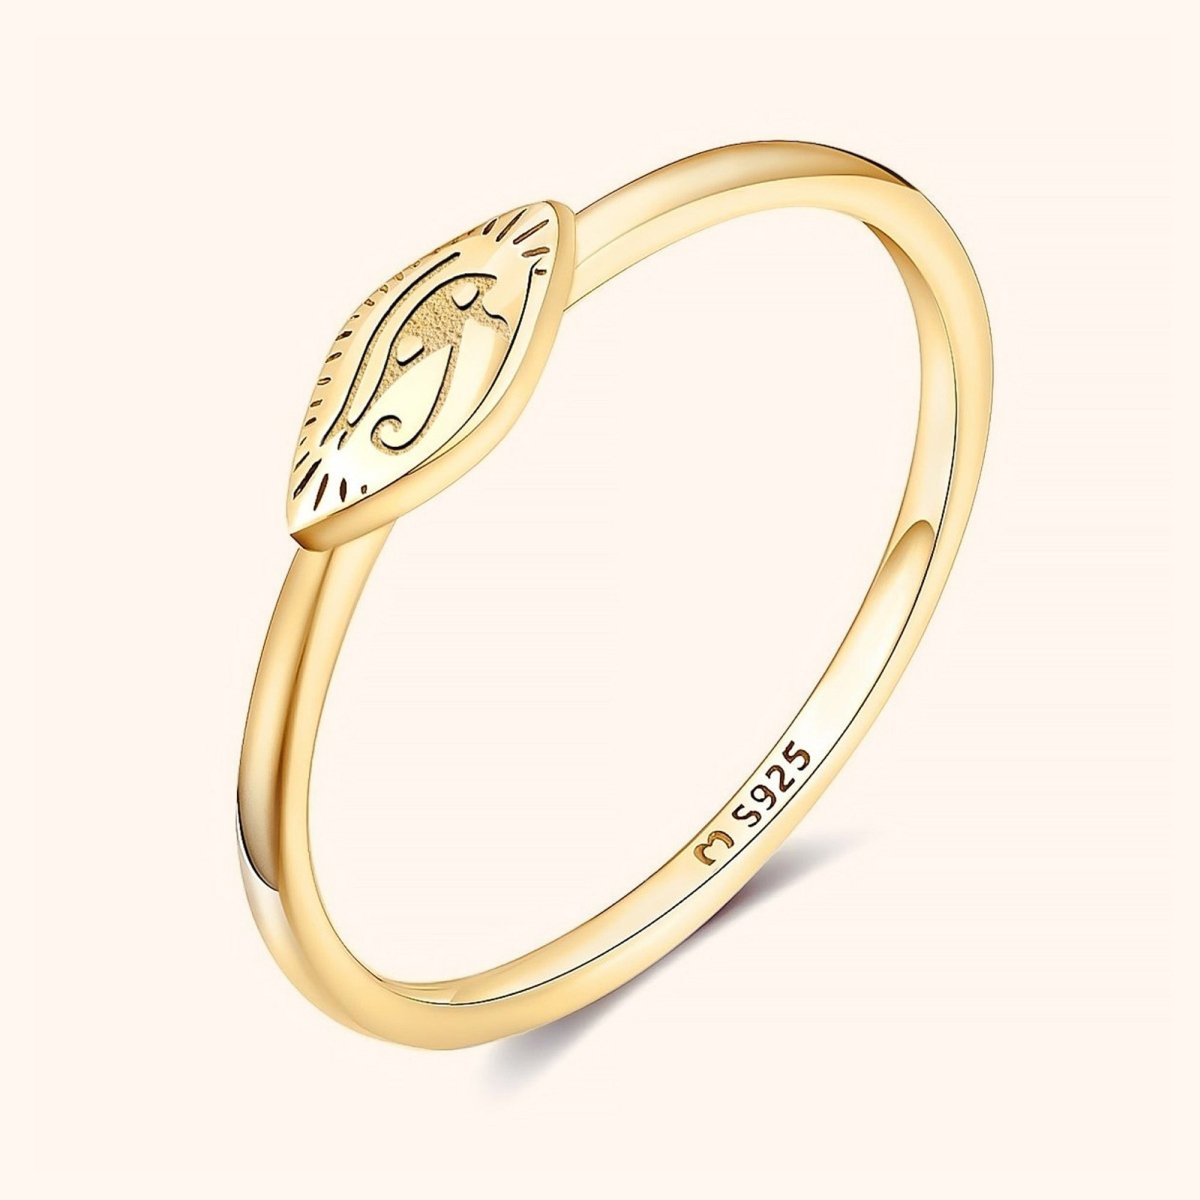 "Eye of Horus" Ring - Milas Jewels Shop